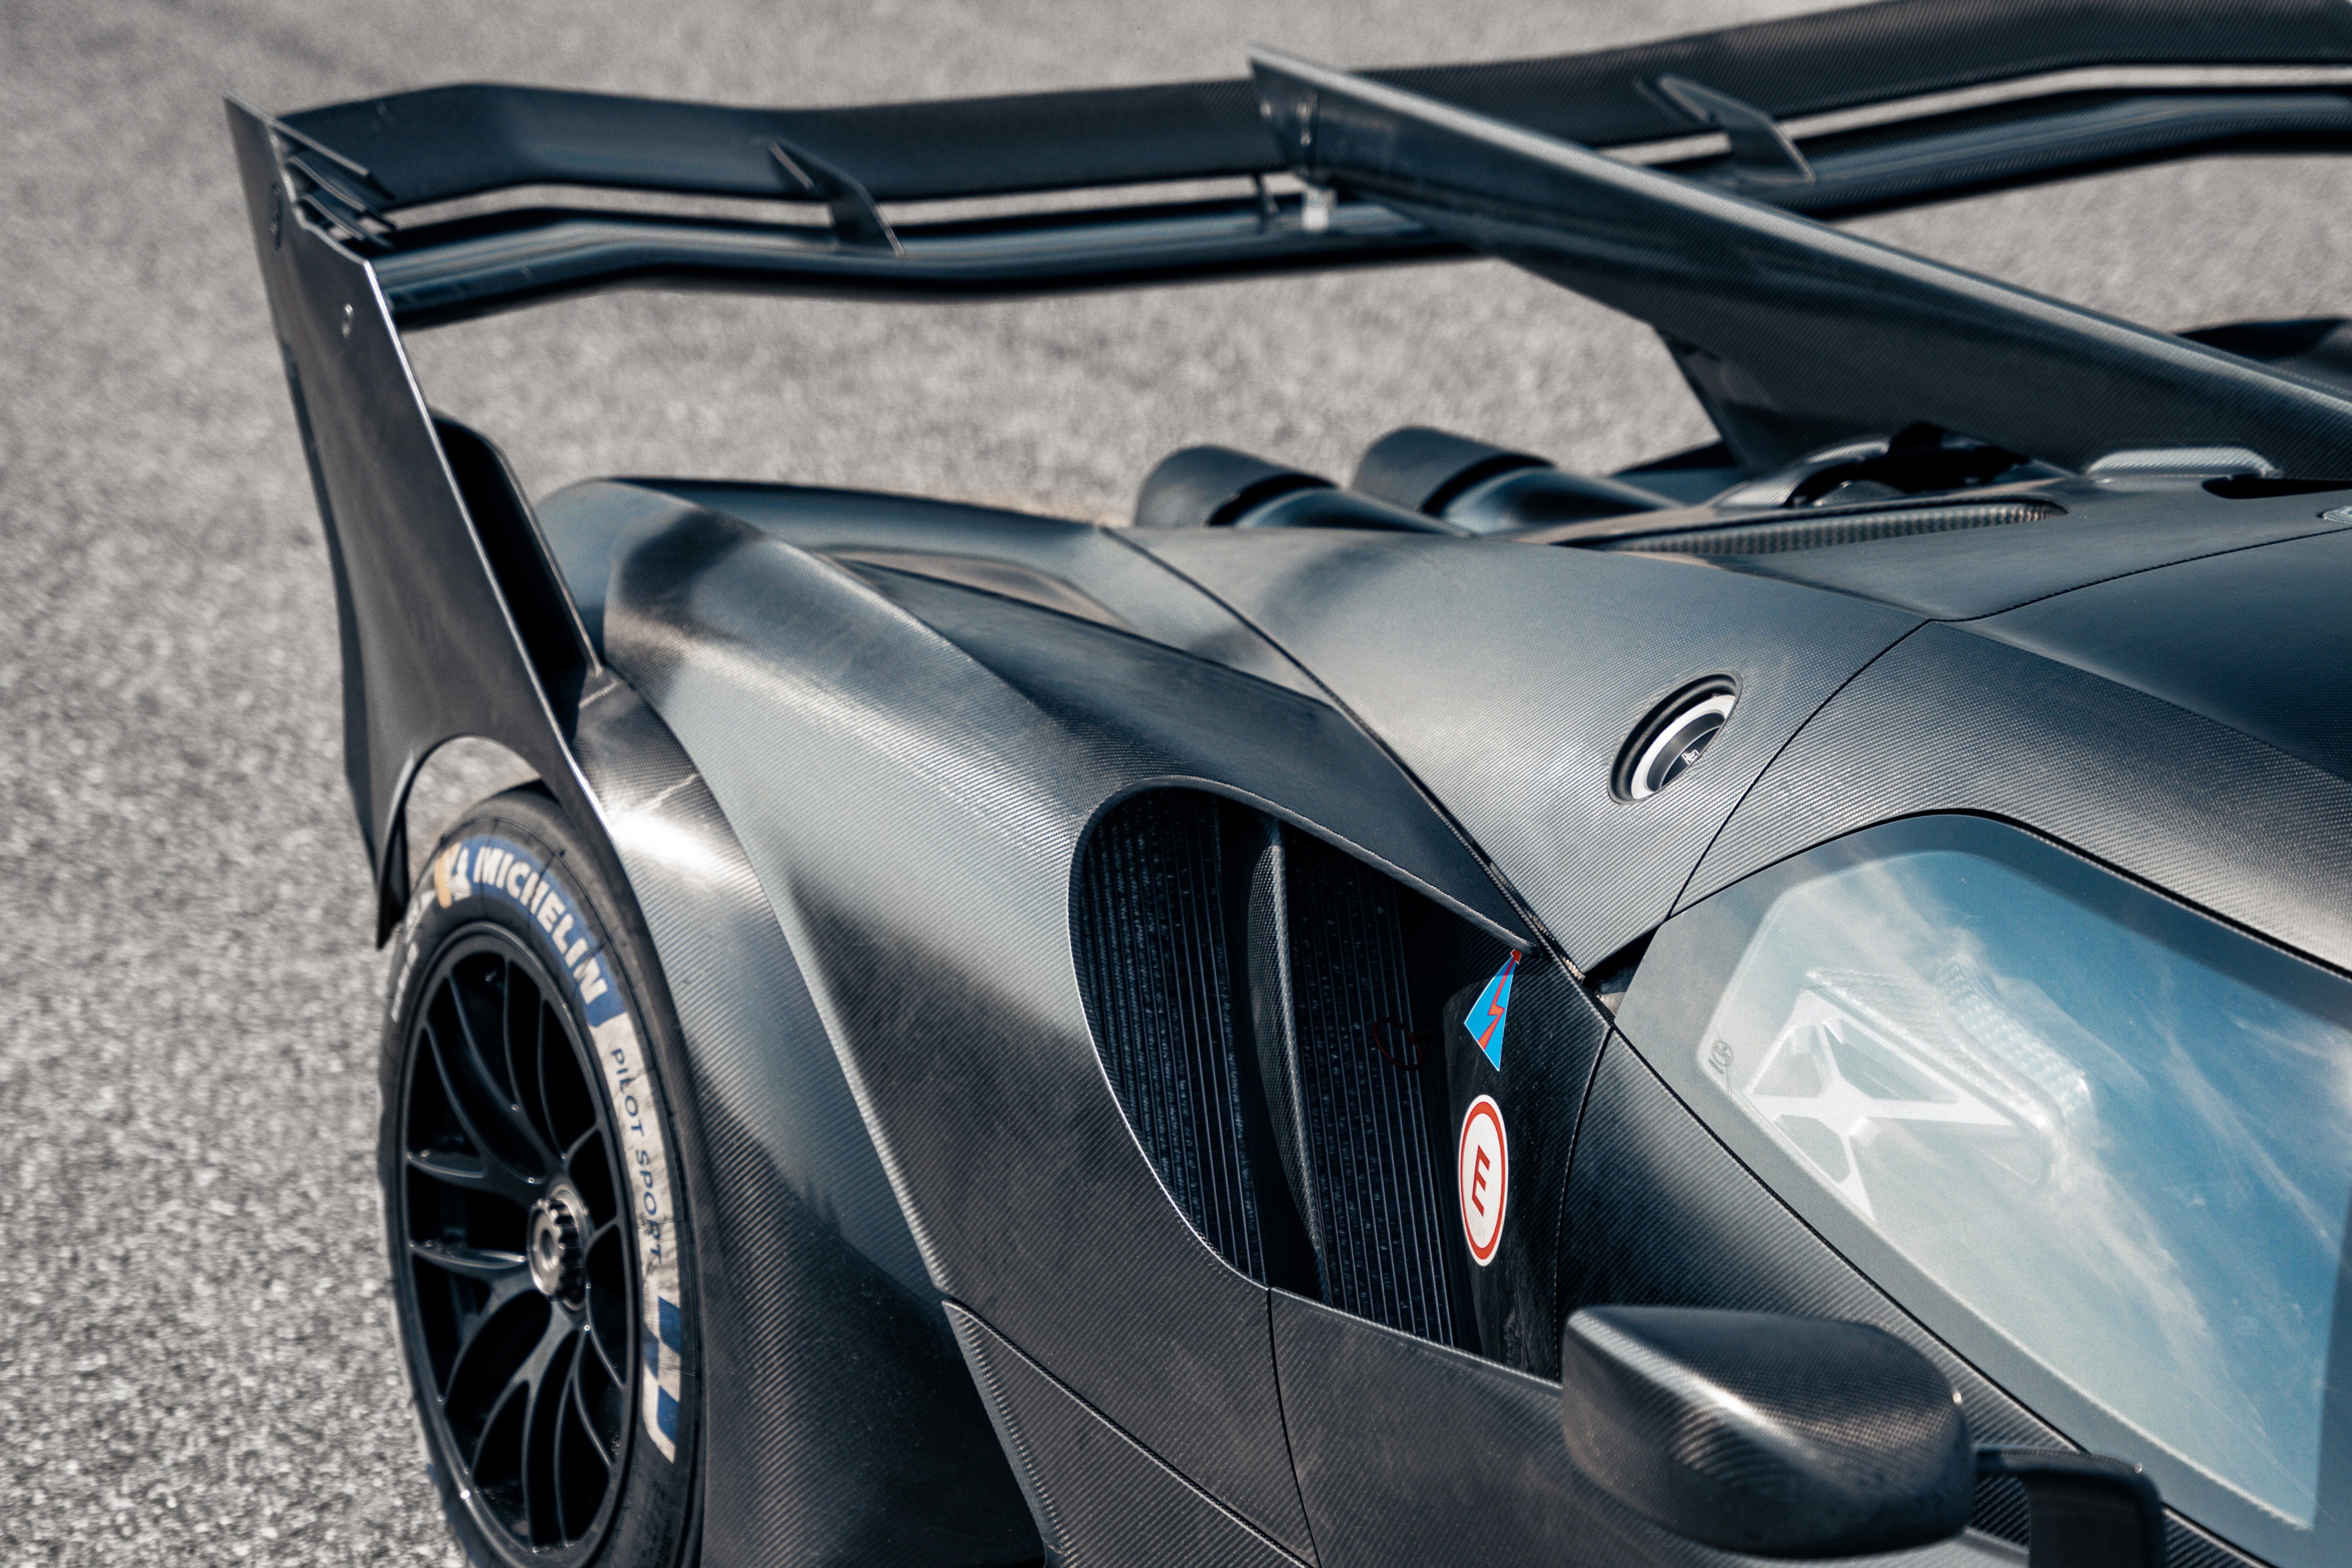 Siêu xe Bugatti Bolide bước vào giai đoạn thử nghiệm - ảnh 4